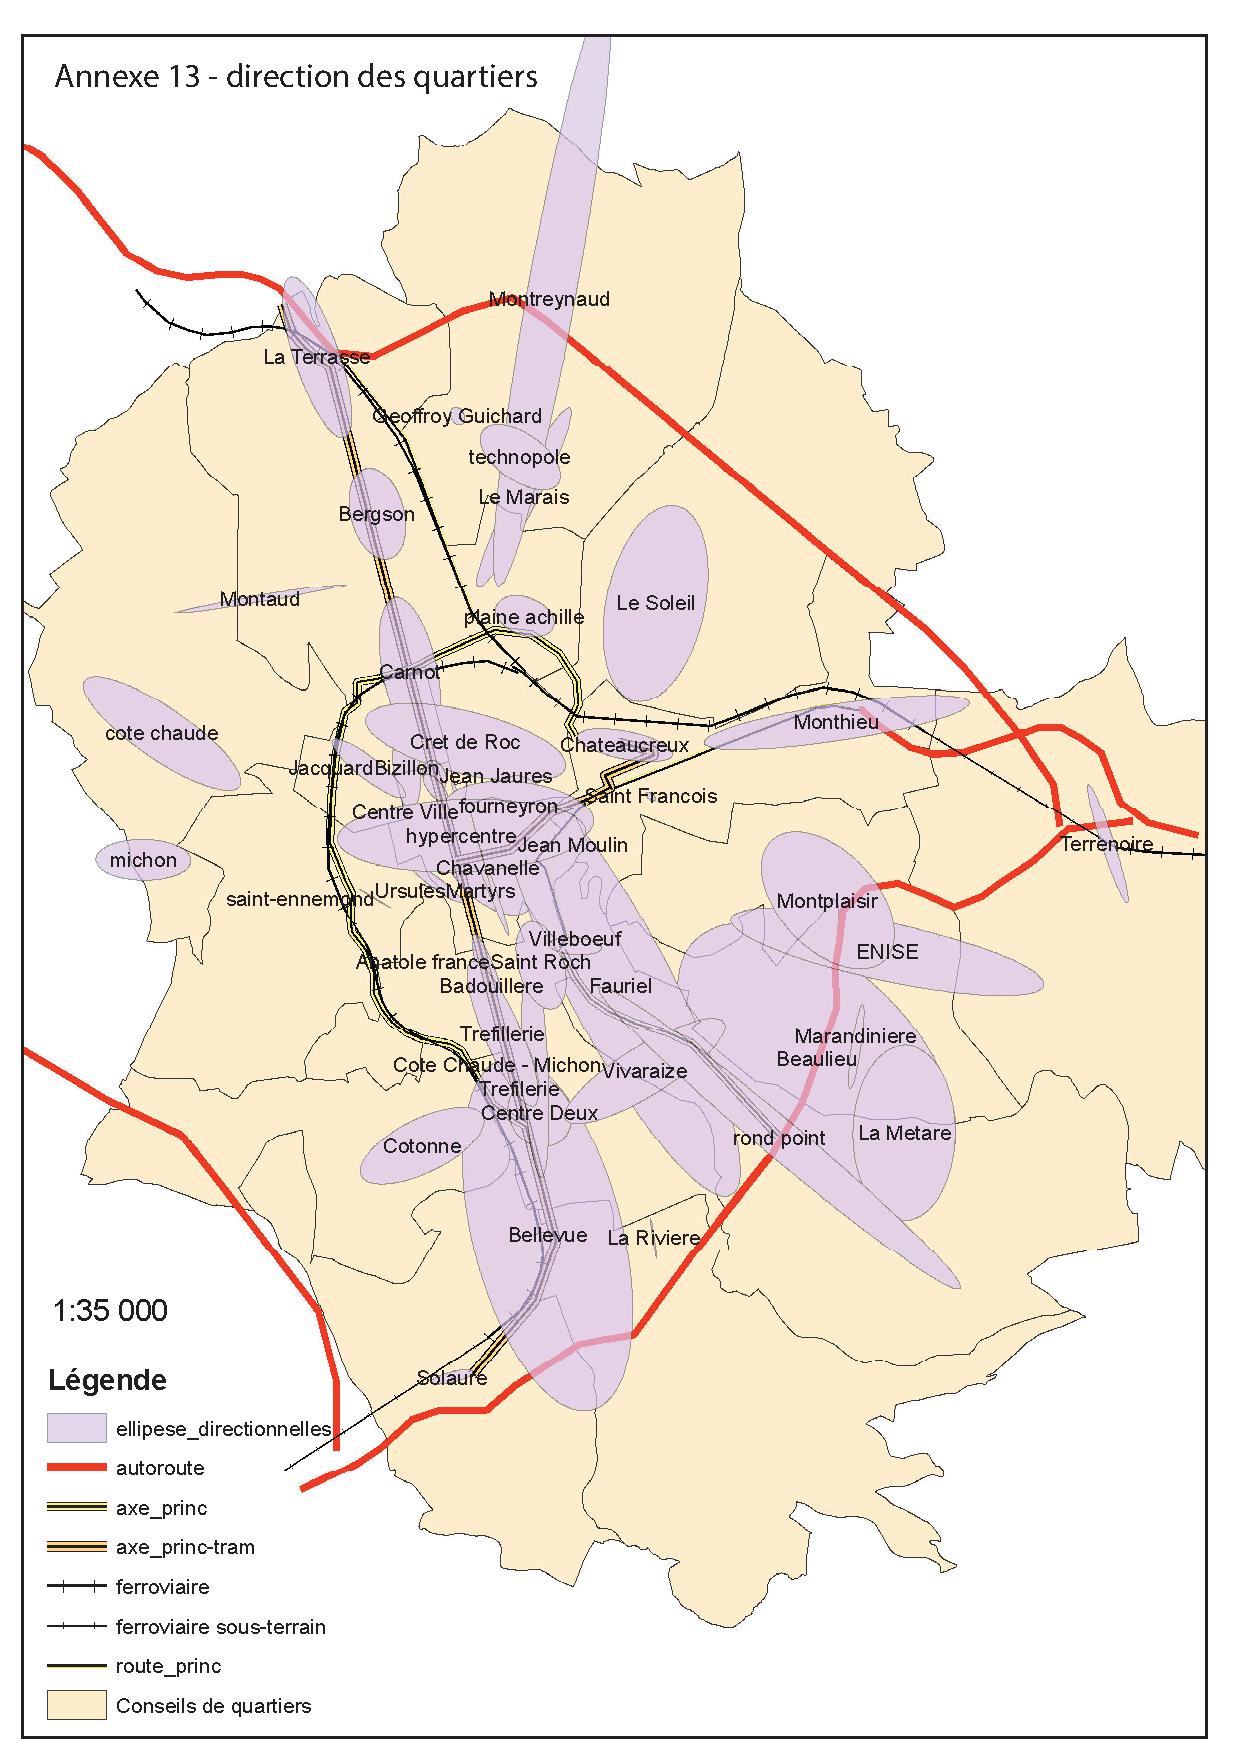 Directional ellipses of Saint Etienne